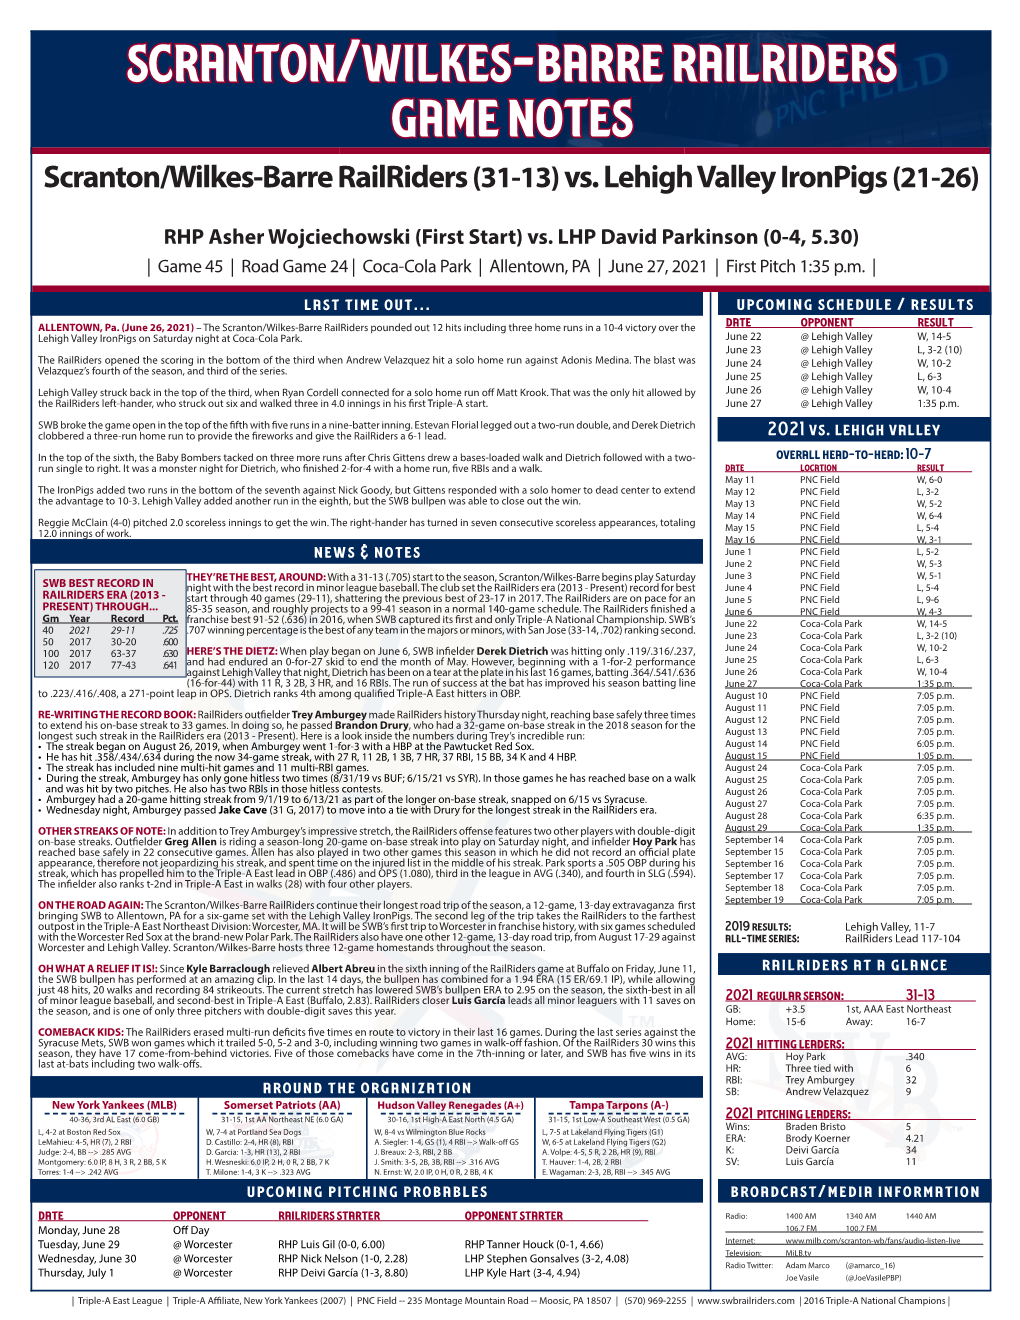 Scranton/Wilkes-Barre Railriders Game Notes Scranton/Wilkes-Barre Railriders (31-13) Vs